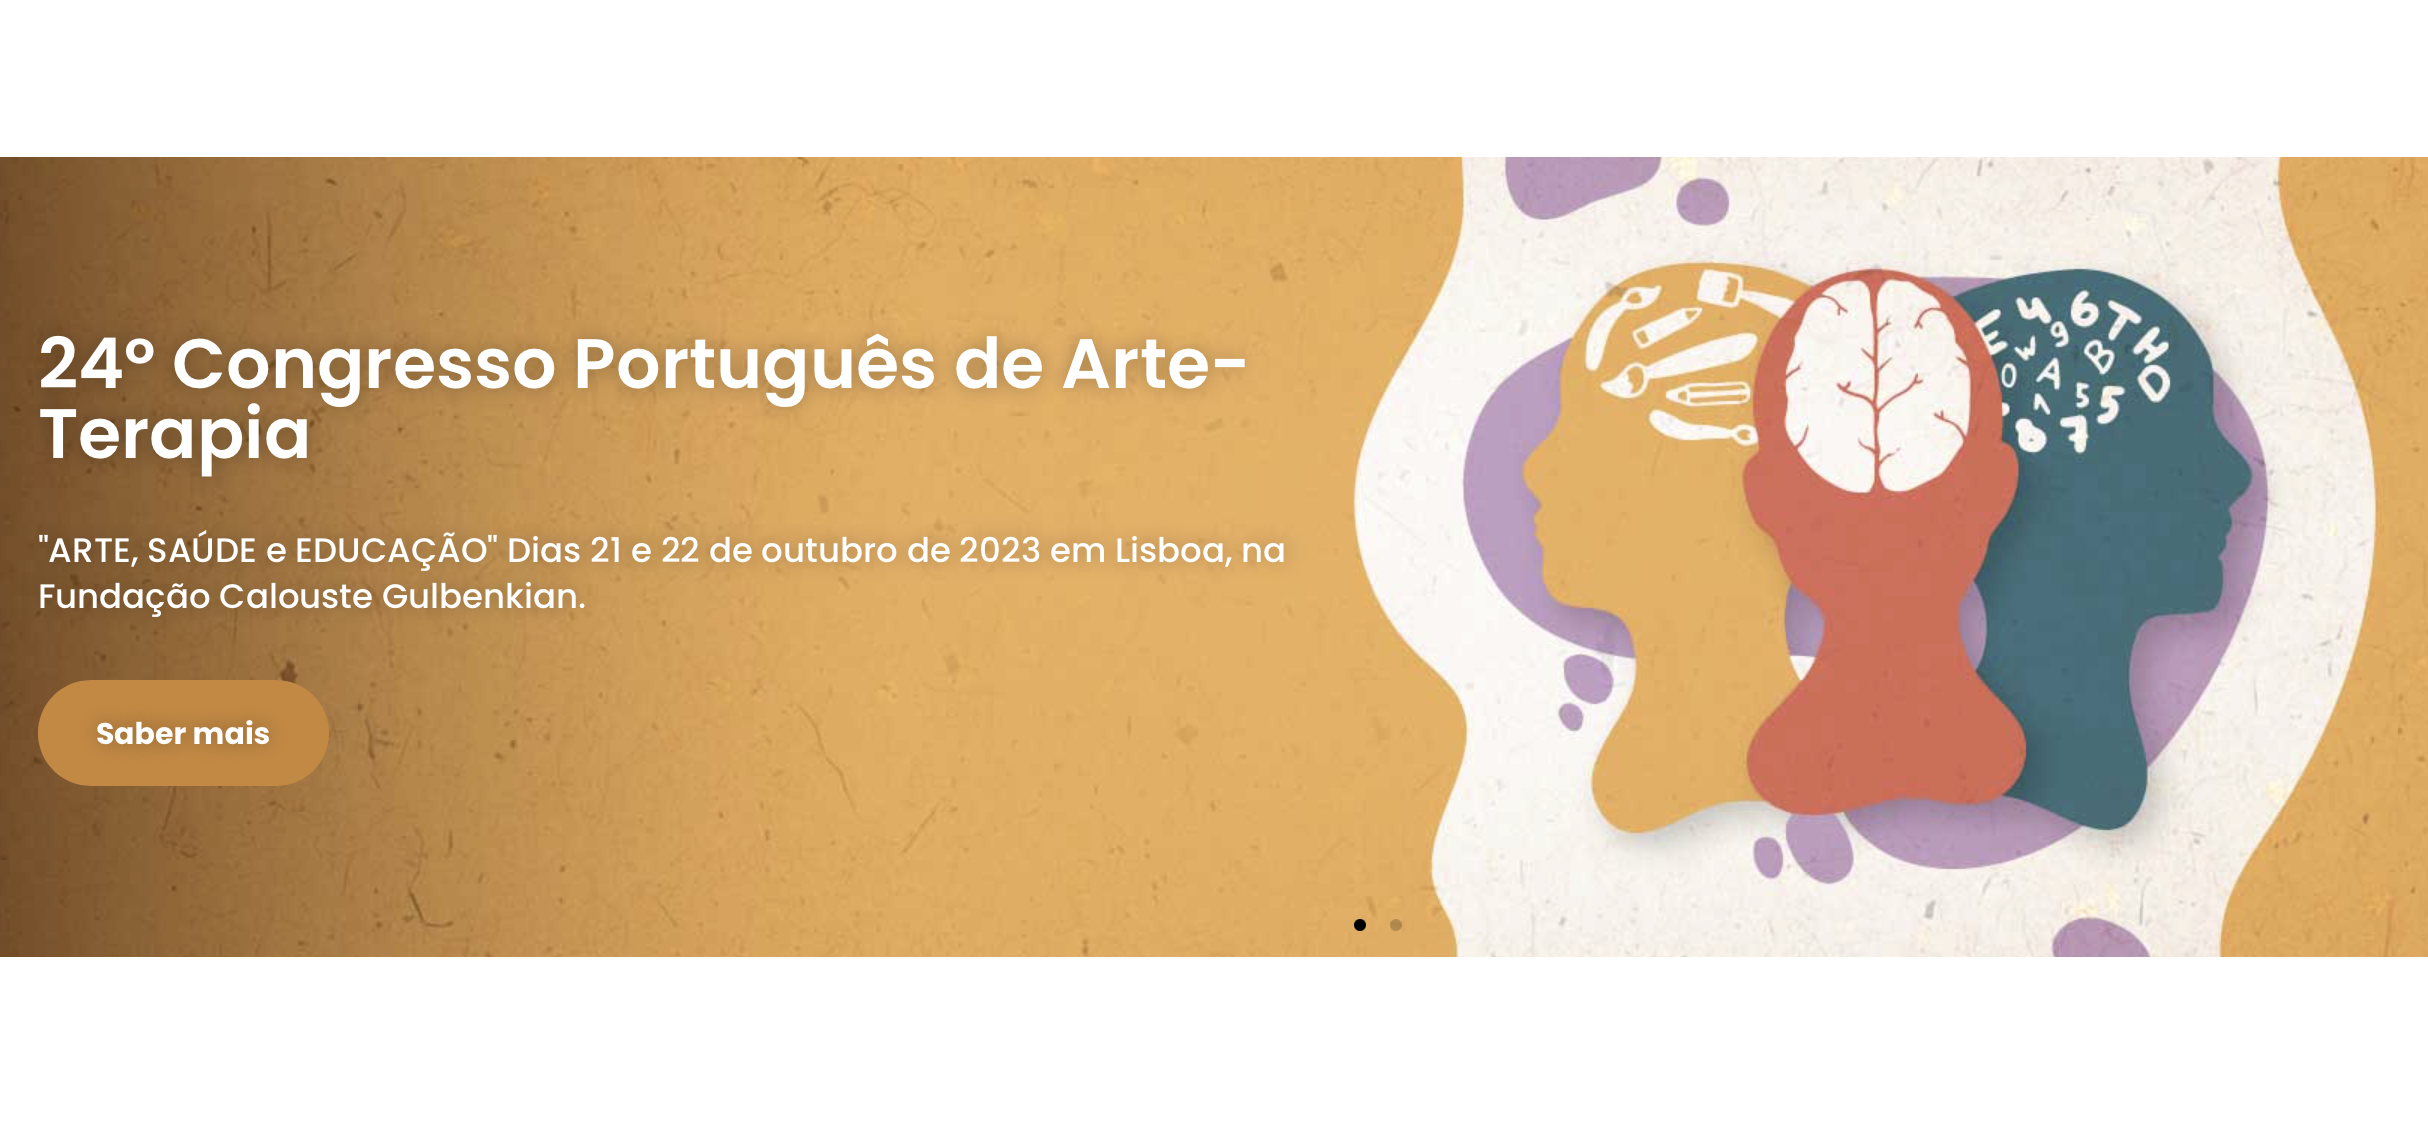 SPLS participa no 24.º Congresso Português de Arte-Terapia